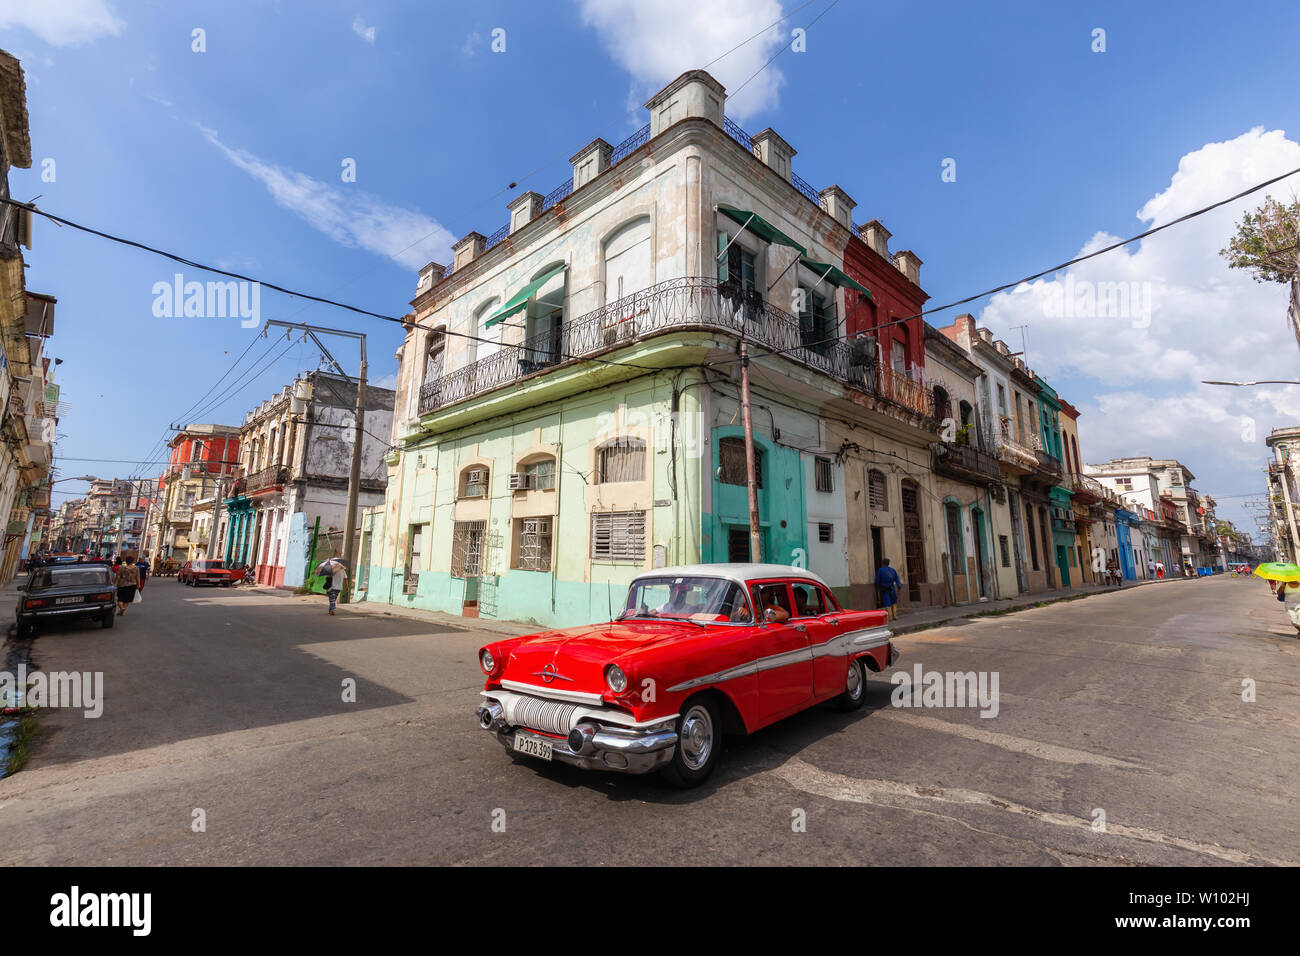 La Habana, Cuba - 14 de mayo de 2019: Clásico viejo taxi coches en las calles de la vieja ciudad de La Habana durante una mañana de sol brillante y vibrante. Foto de stock